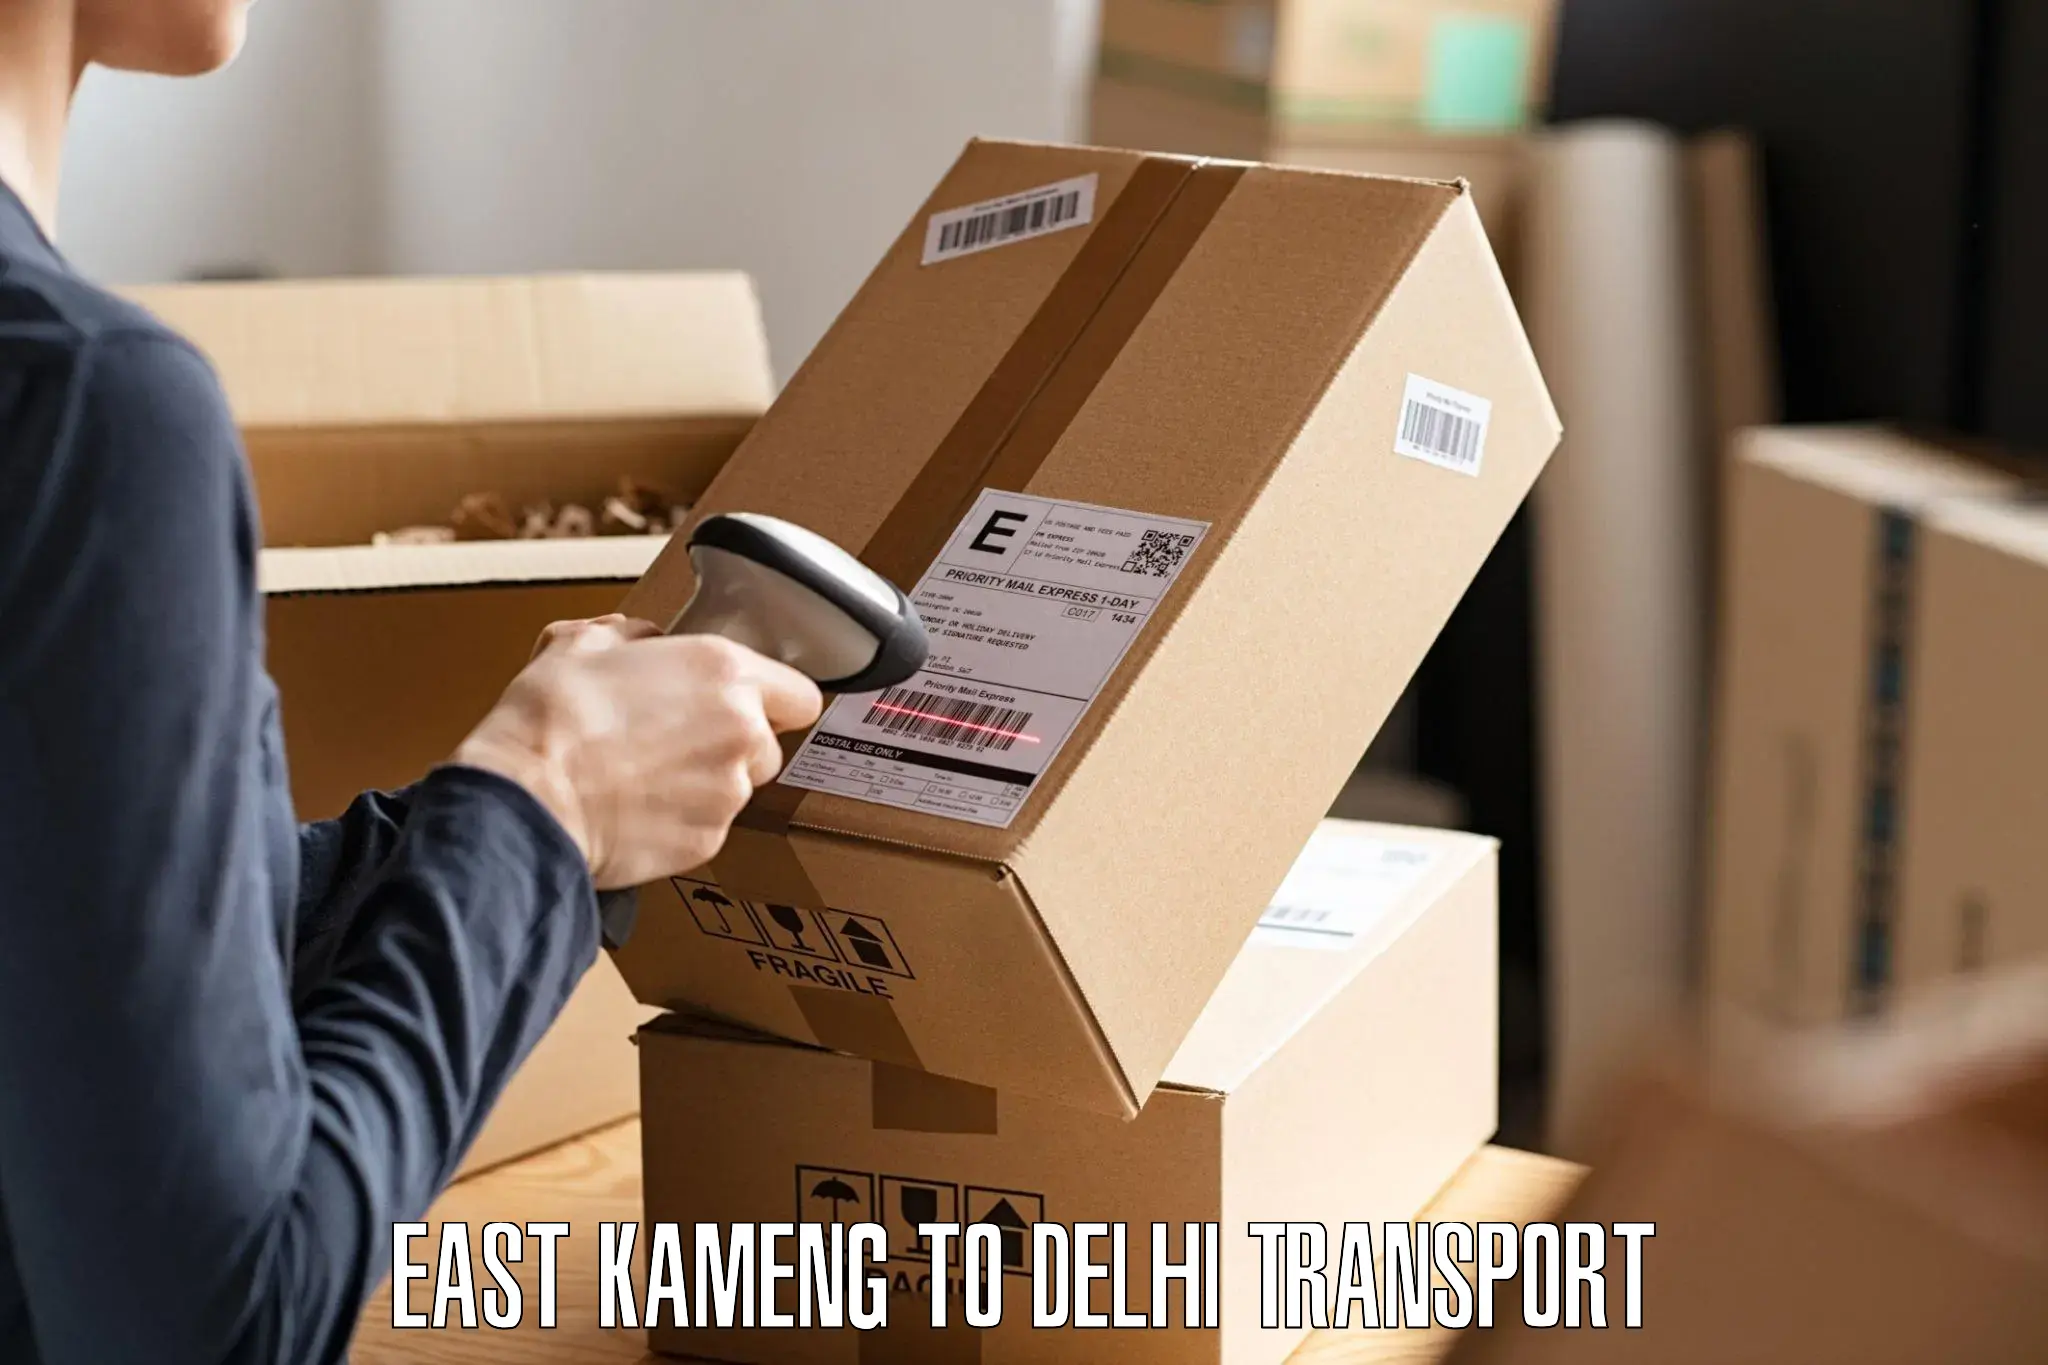 Furniture transport service East Kameng to University of Delhi